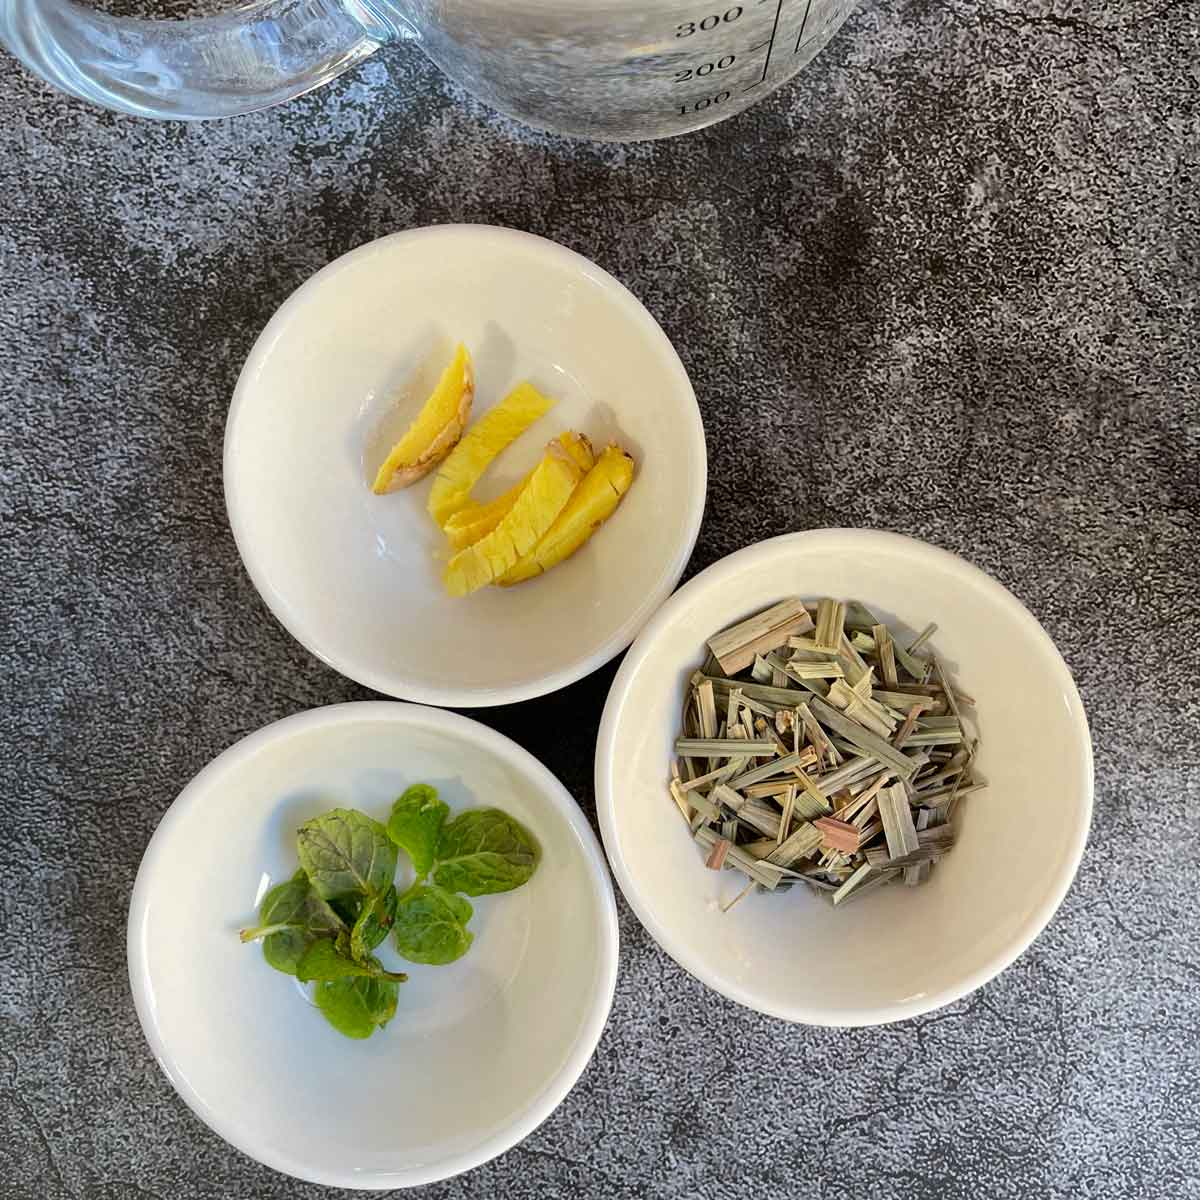 Ingredients for lemongrass tea.